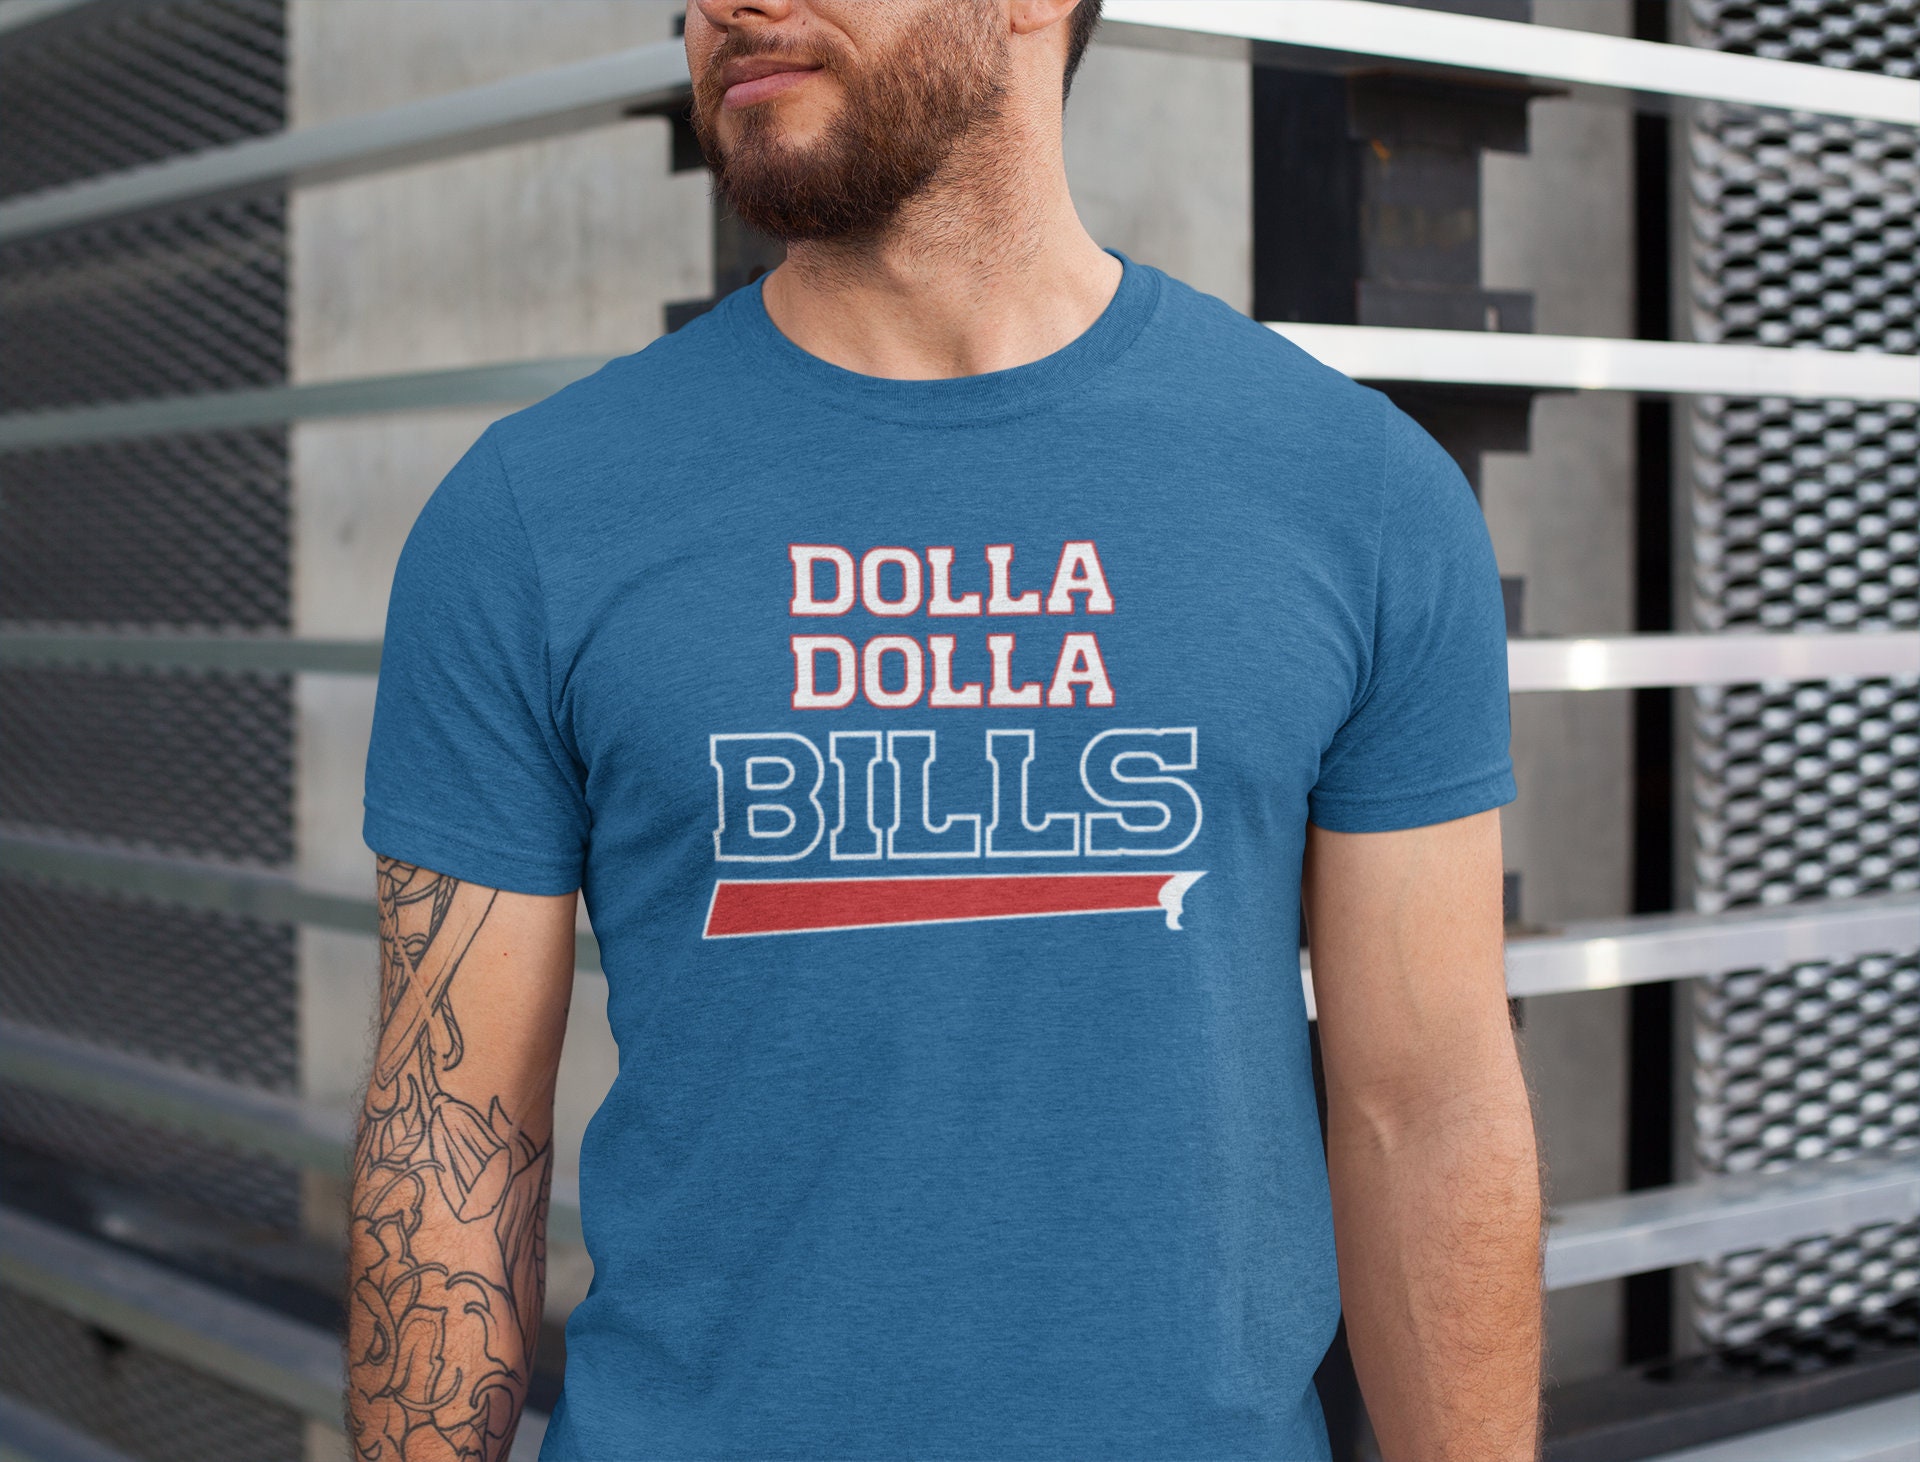 buffalo bills dad shirt